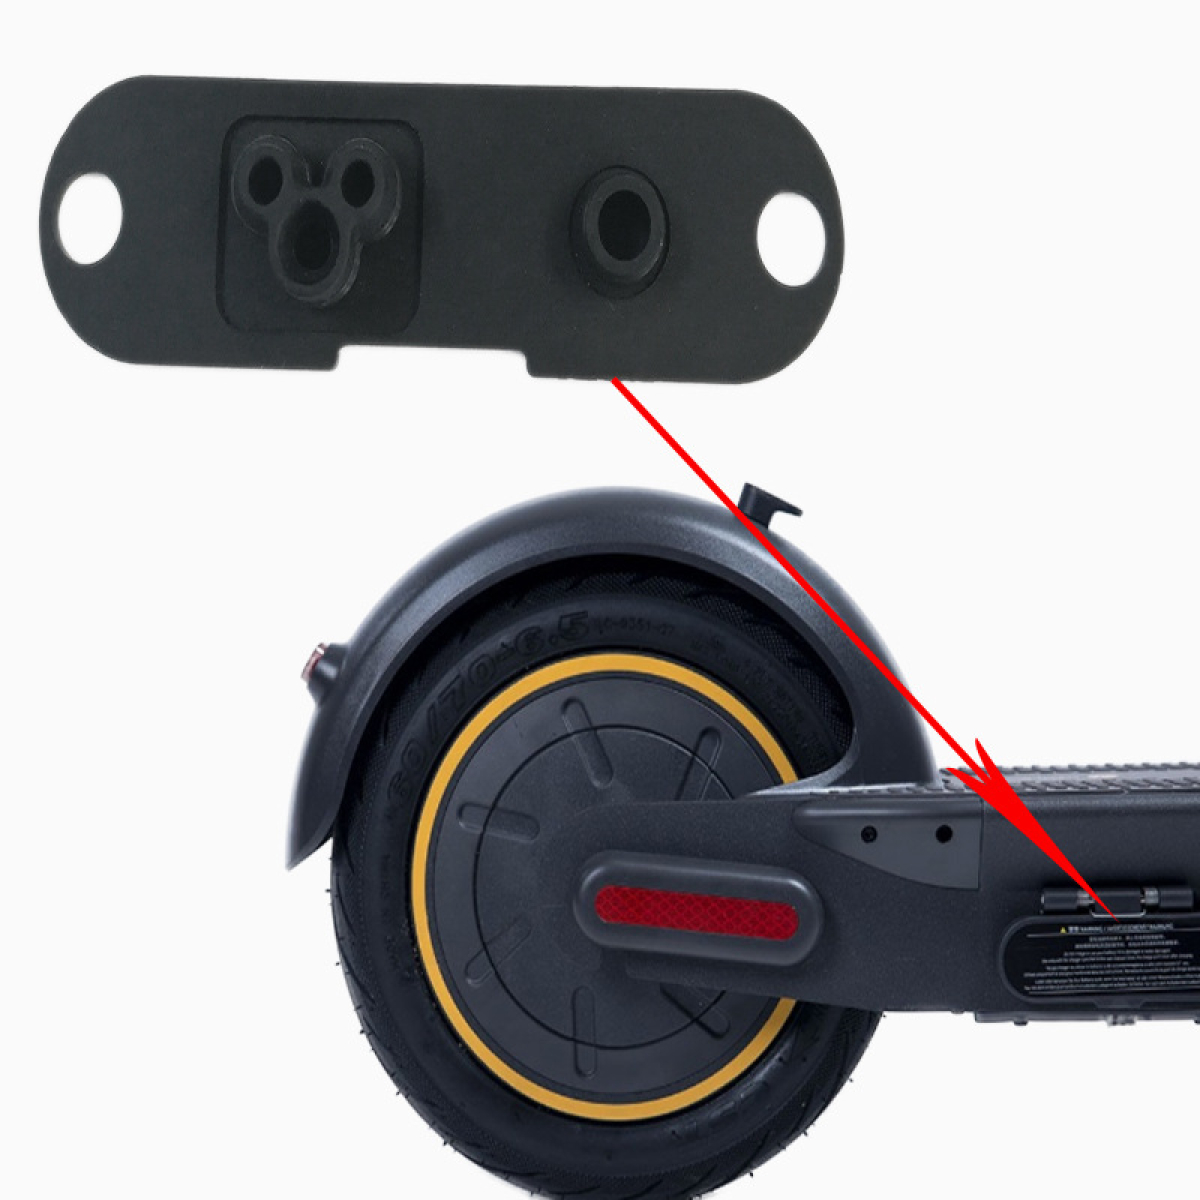 elastiko kalymma charging port gia segway max g30 ilektriko scooter patini 2